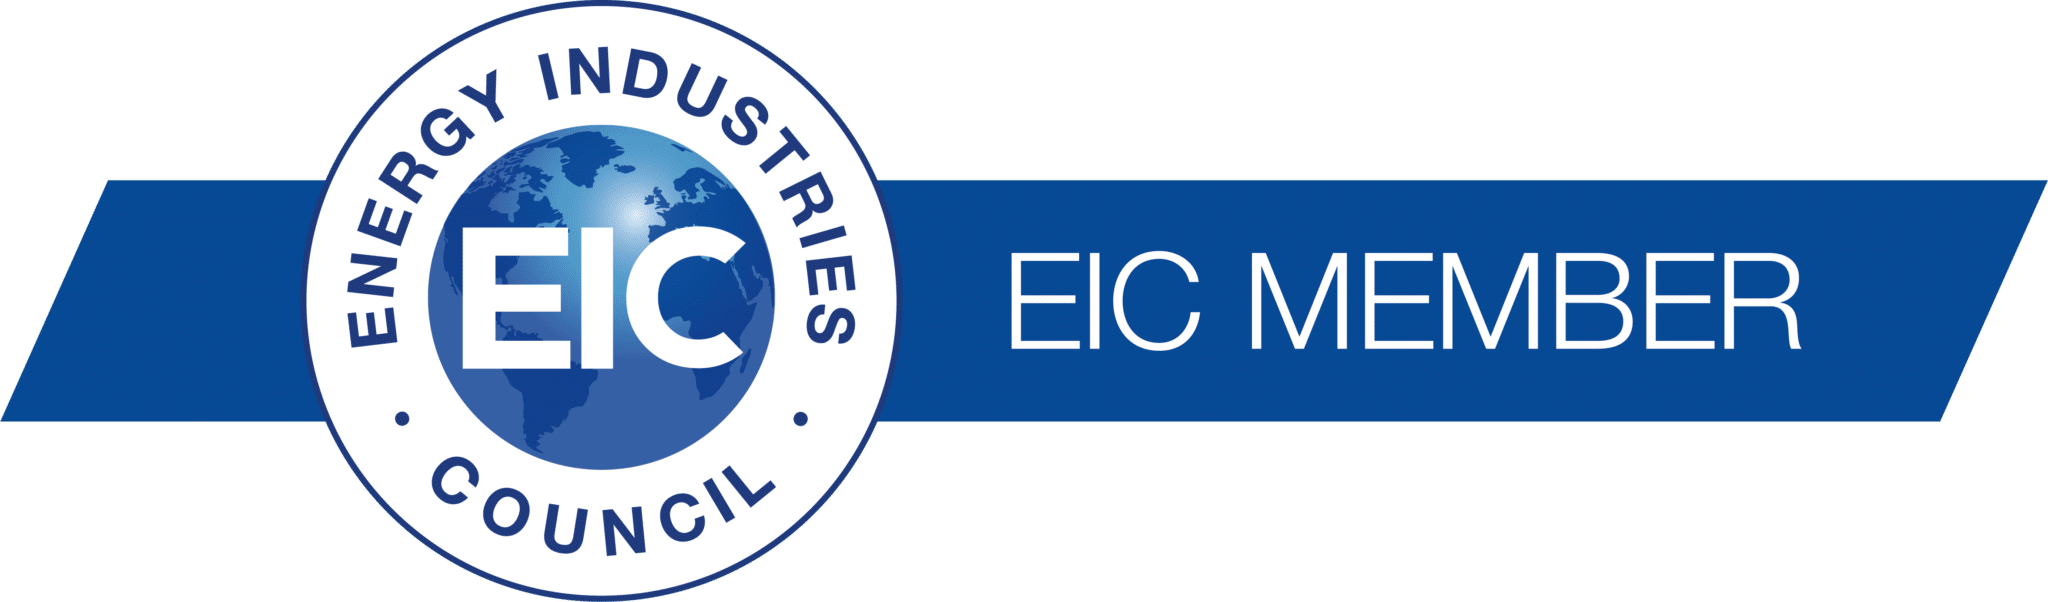 EIC Member logo